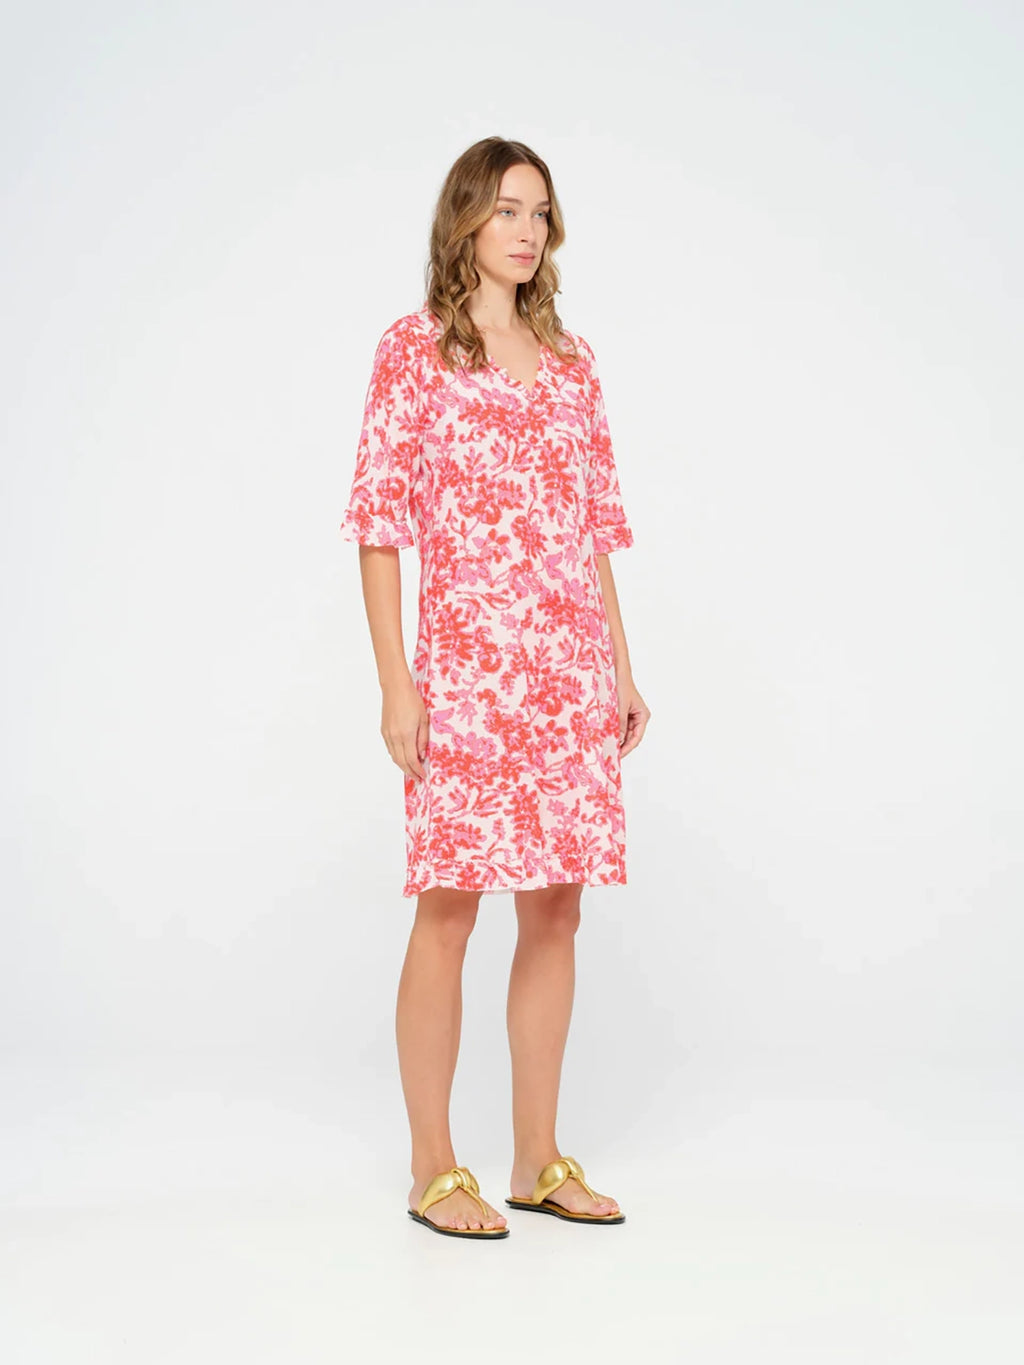 One Season Middy Indi-Antigua Pink-Cotton-Pink Dress 07628-6037